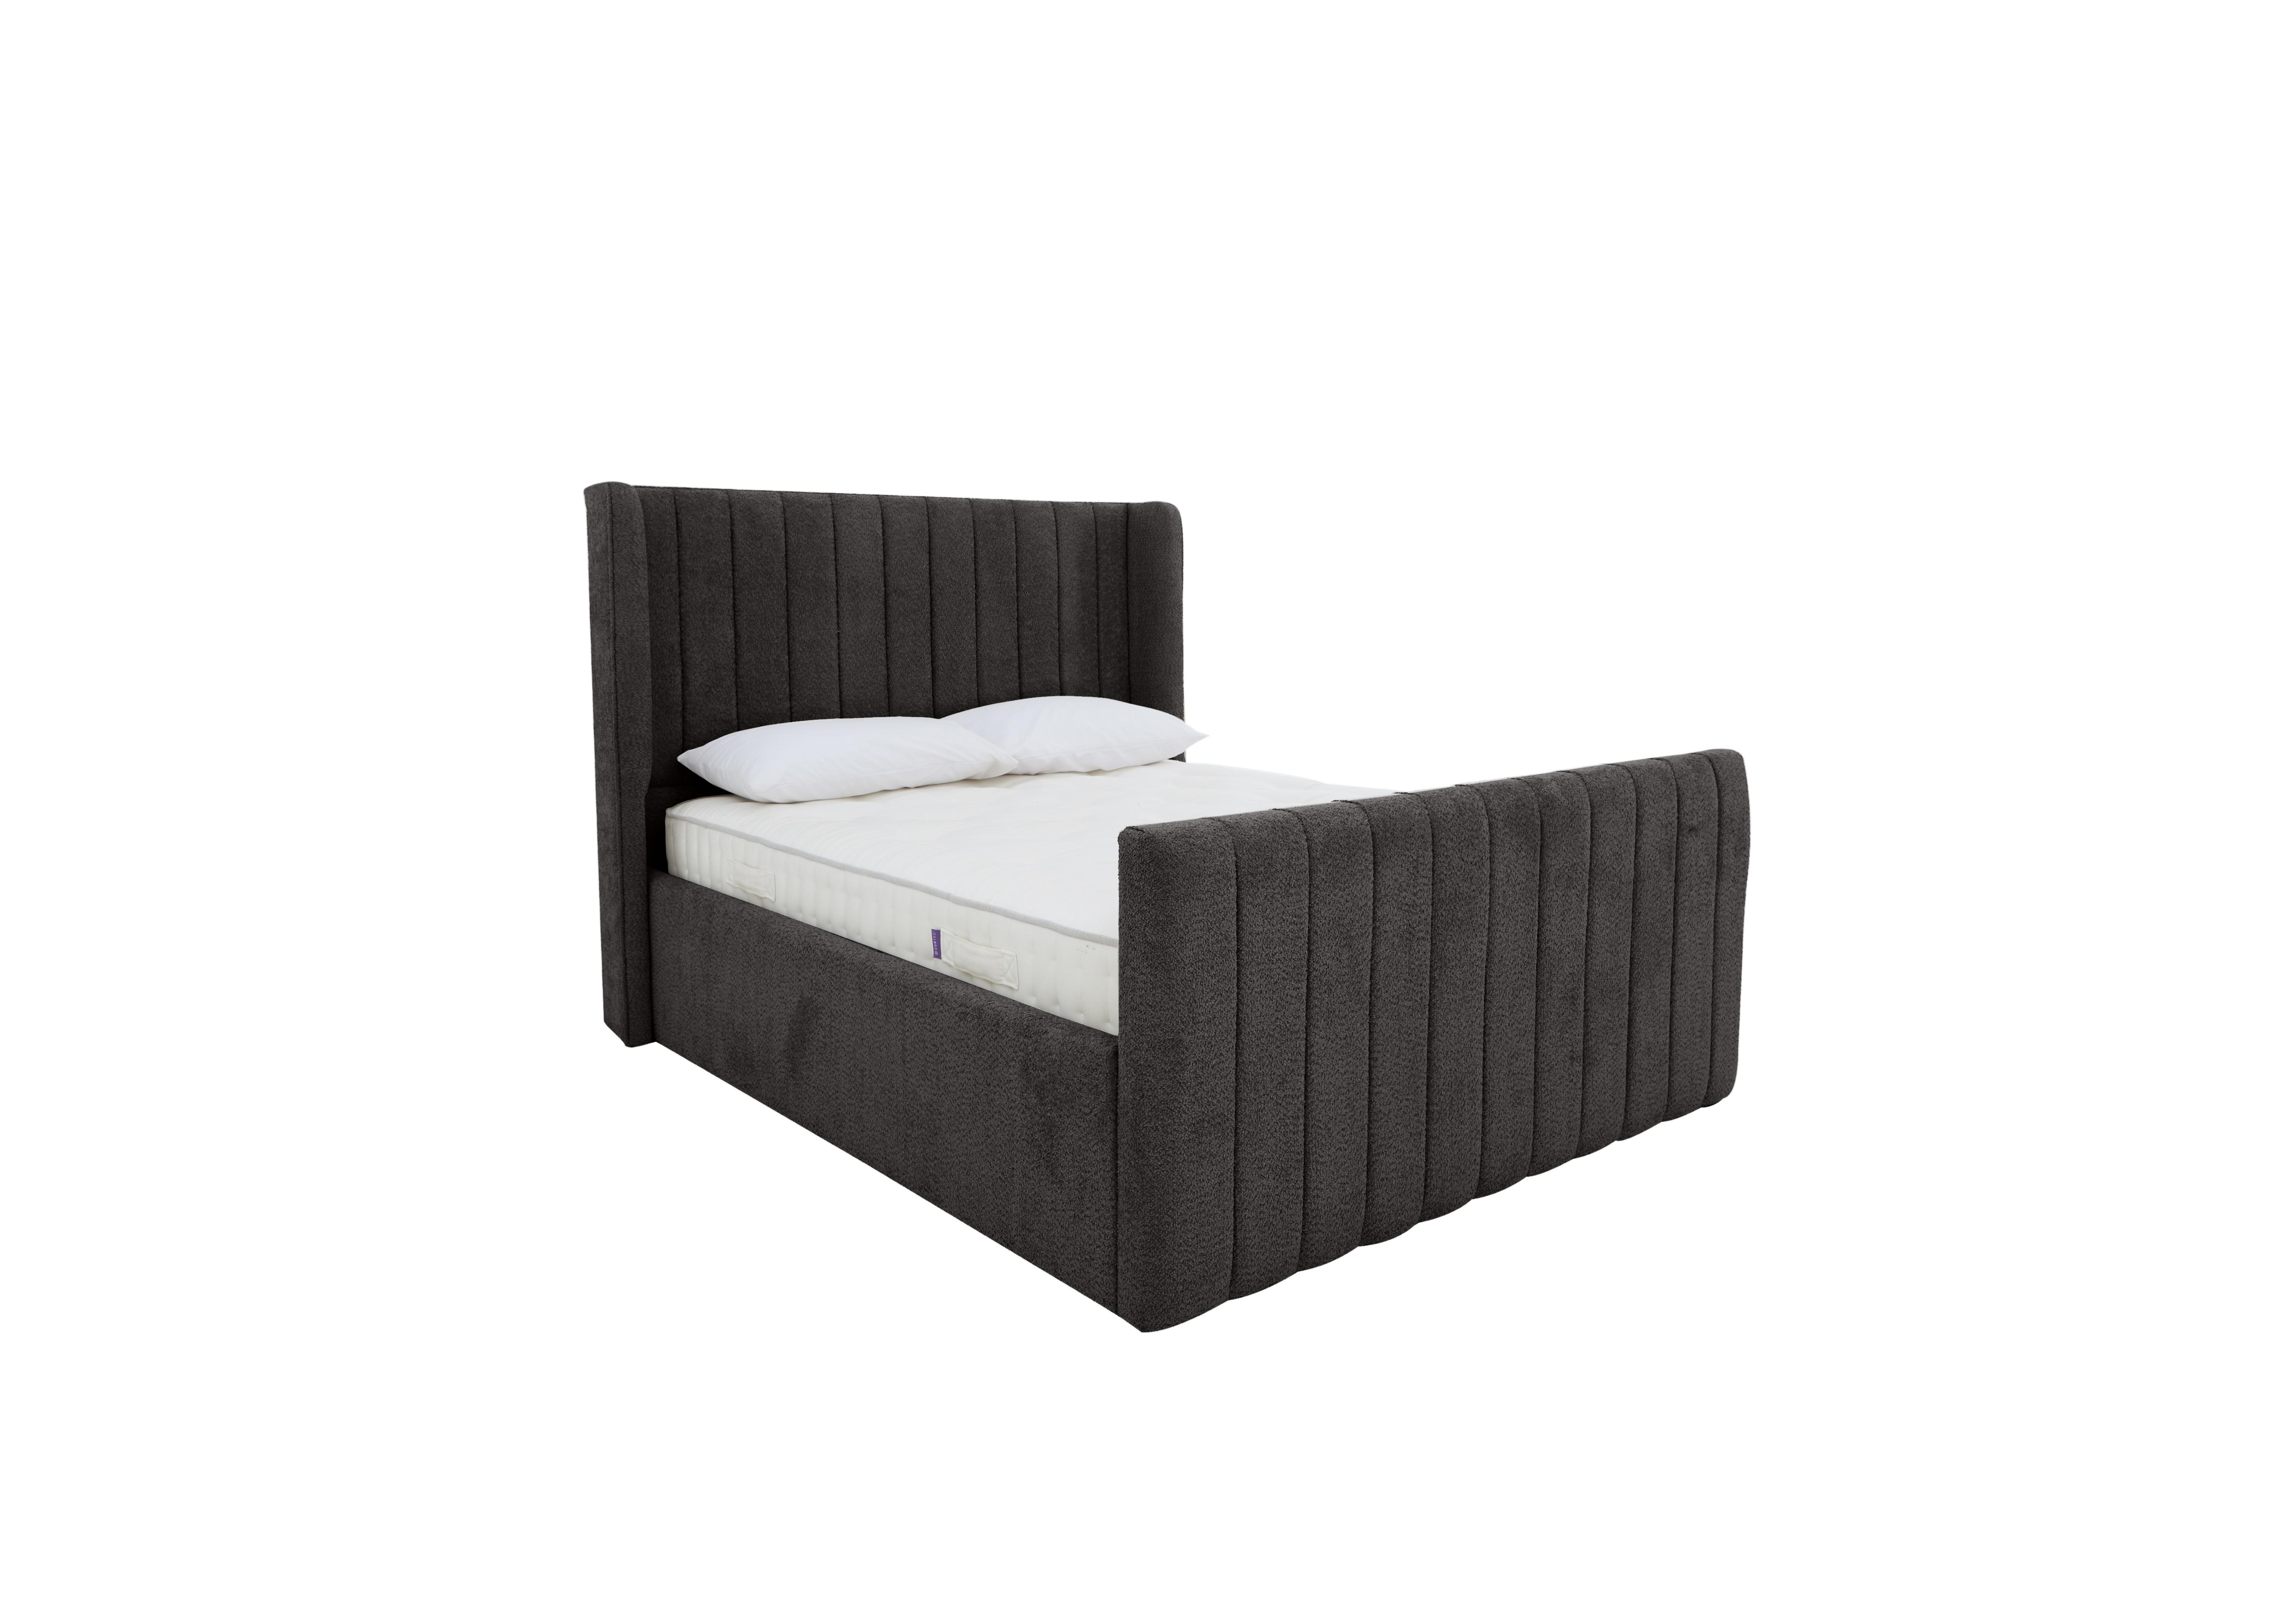 Eira High Foot End Bed Frame in Comfy Black on Furniture Village